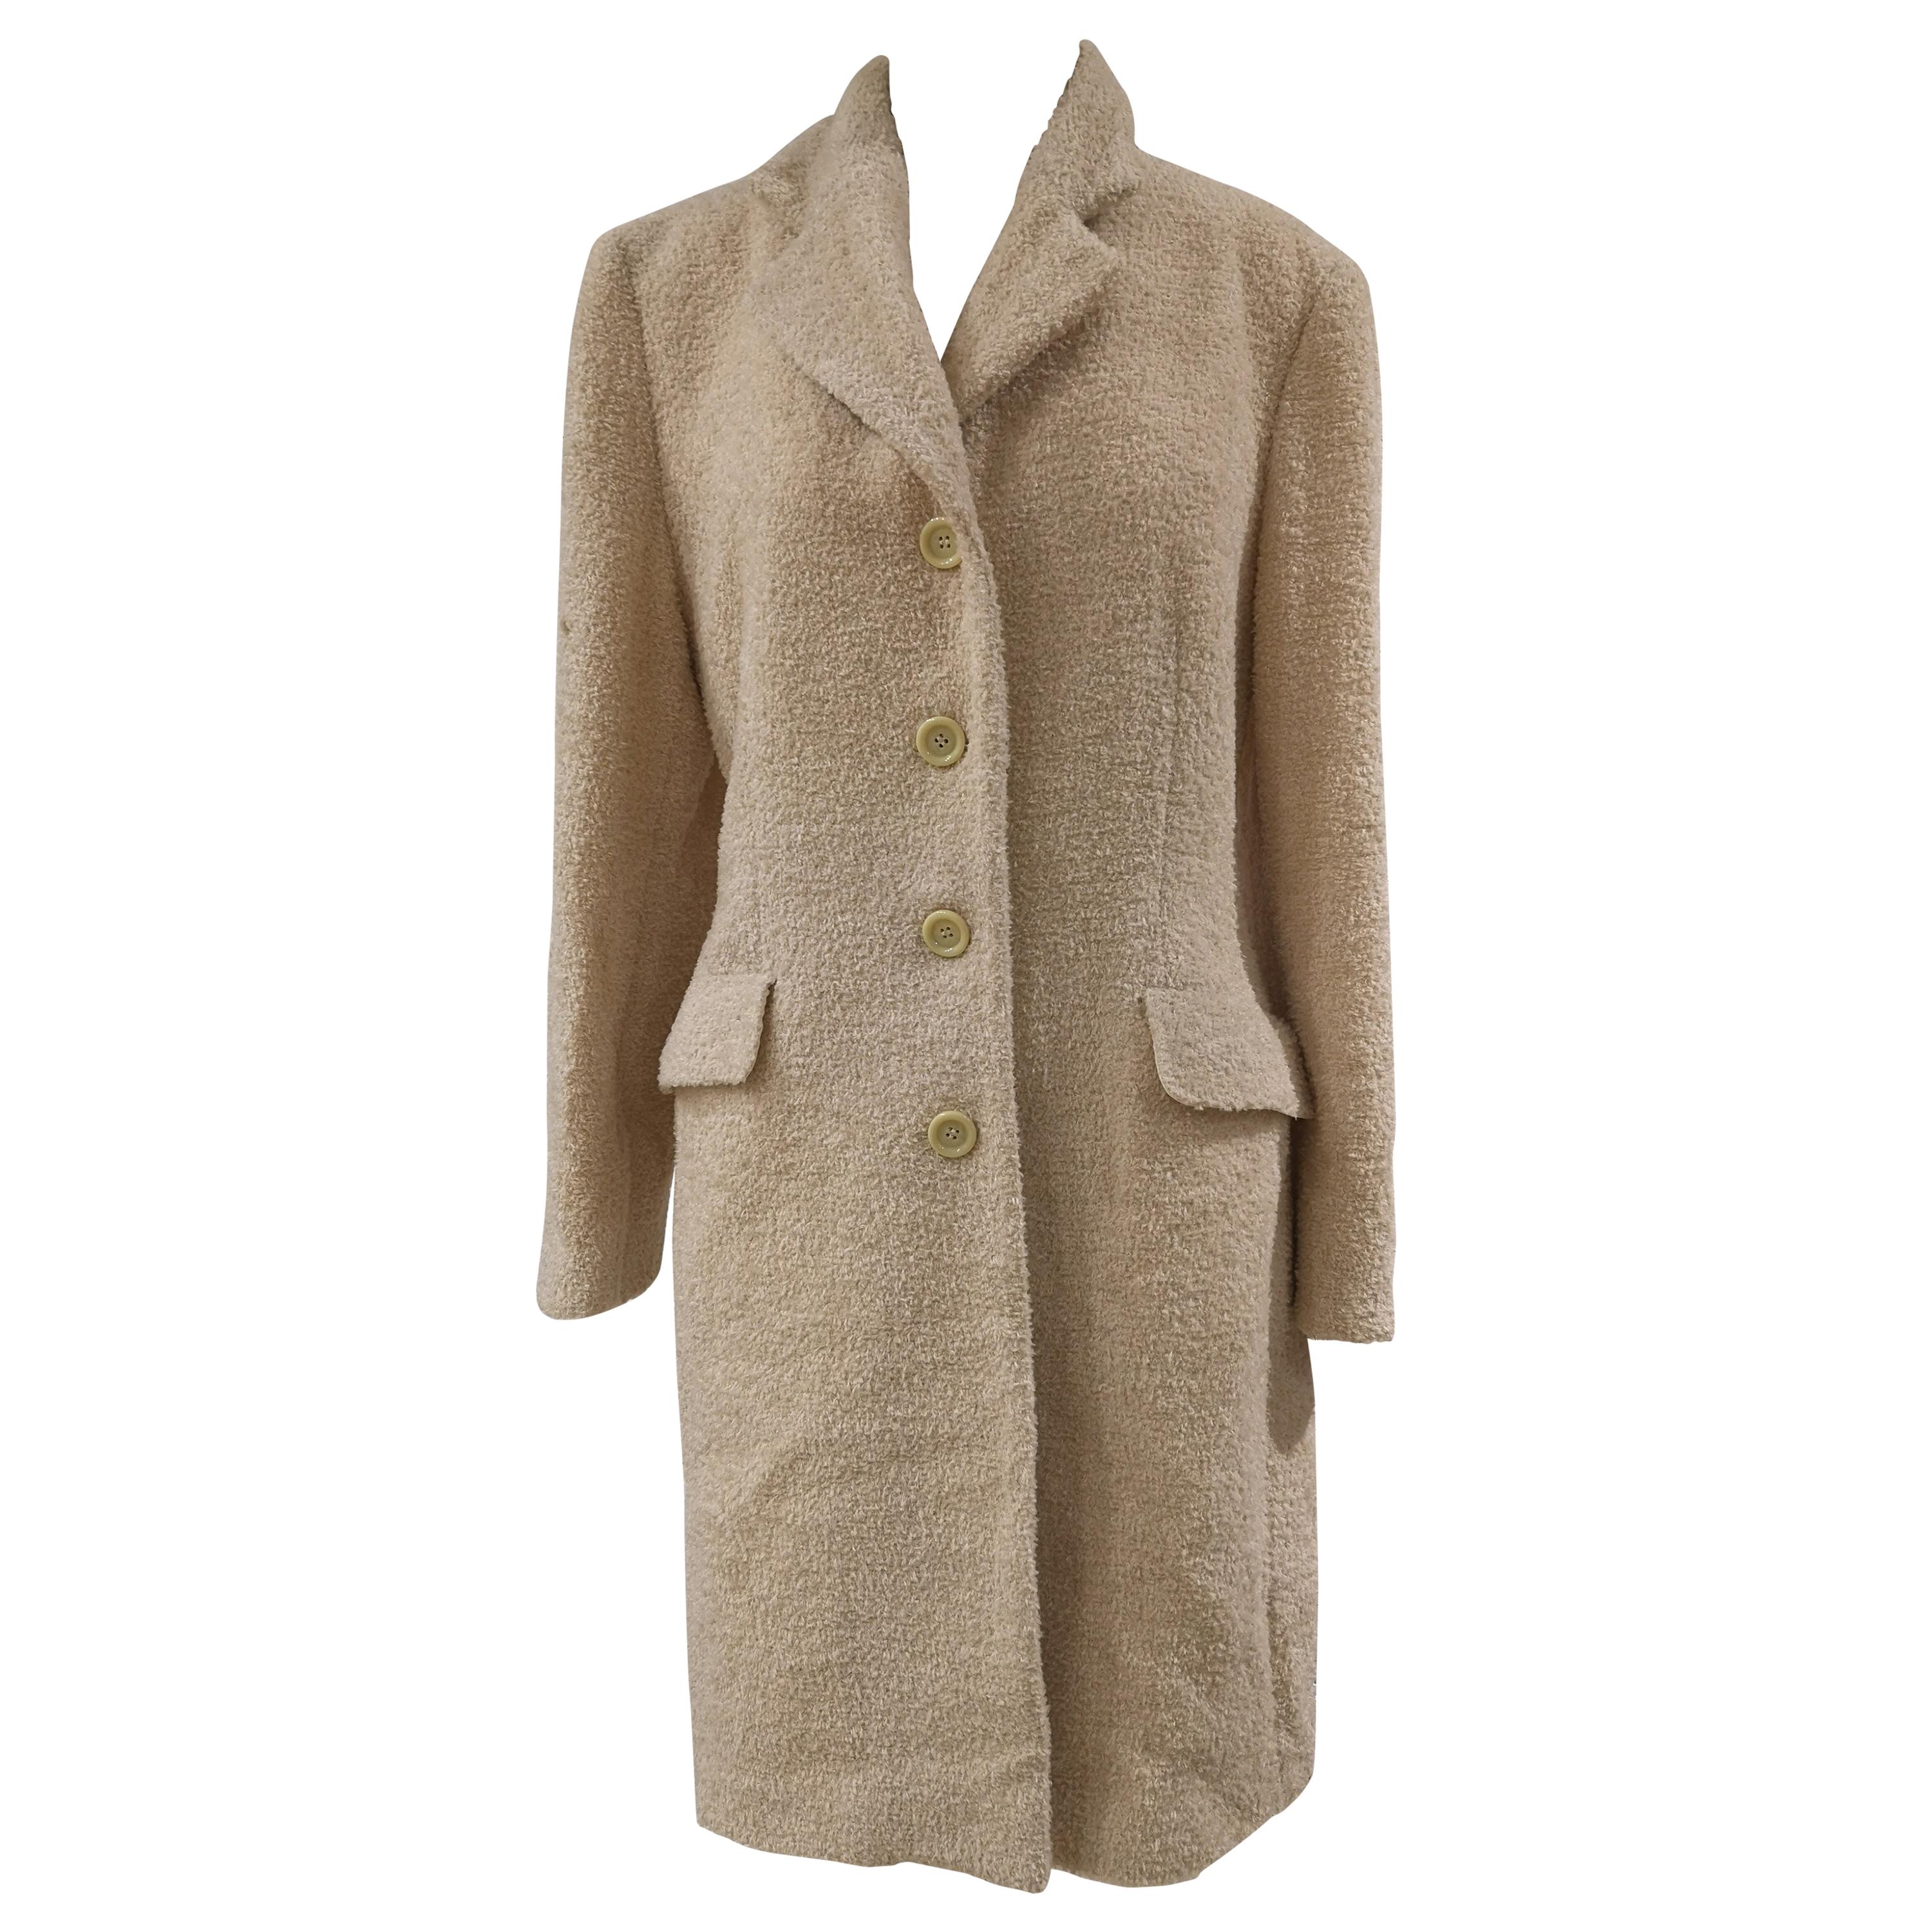 Mari Milano wool coat